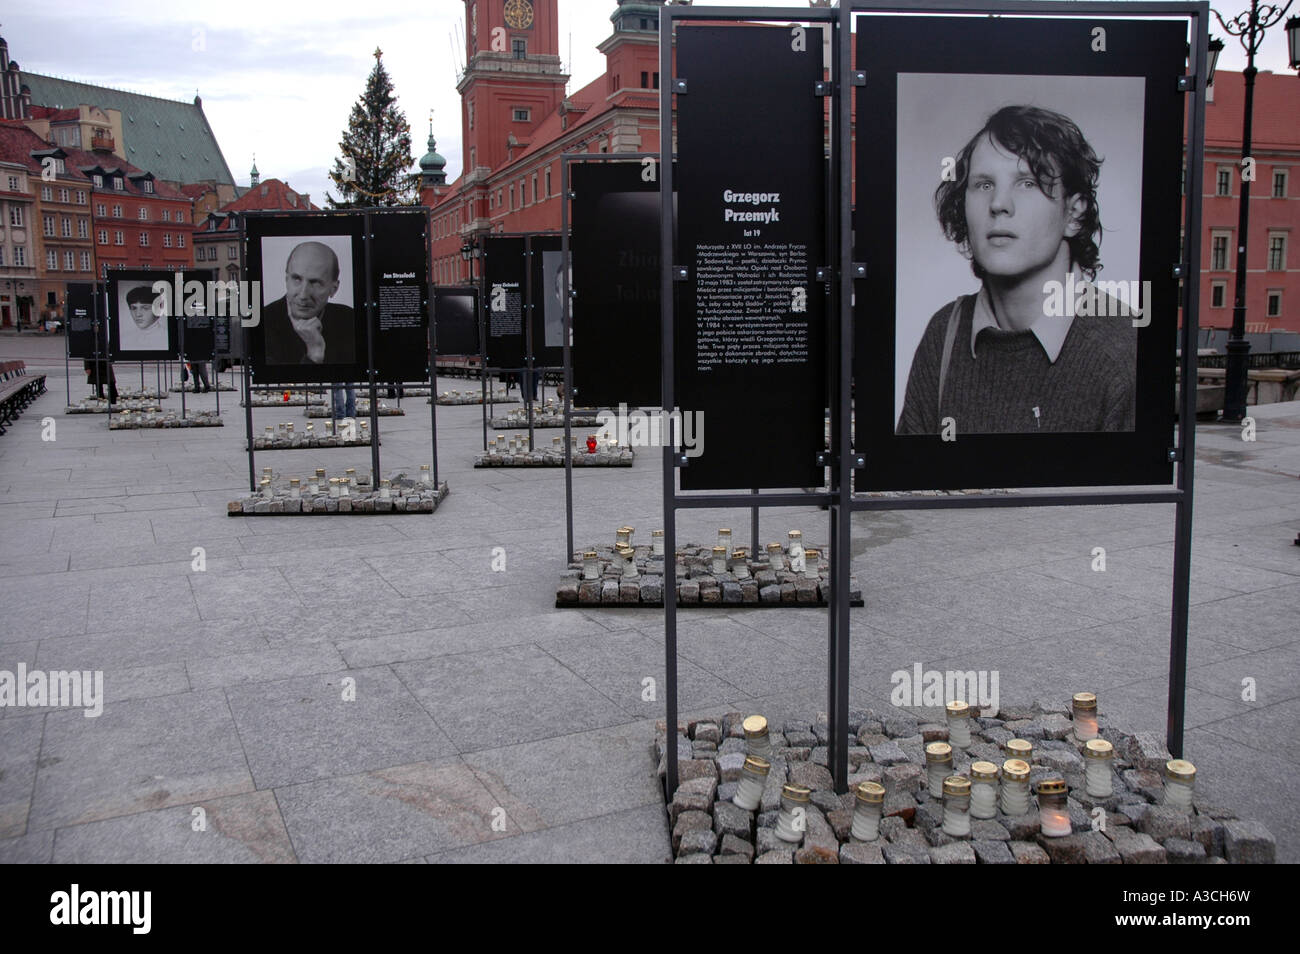 25e anniversaire de la loi martiale introduire en Pologne. Des photographies de personnes tués par - Grzegorz Przemyk regim communiste. Banque D'Images